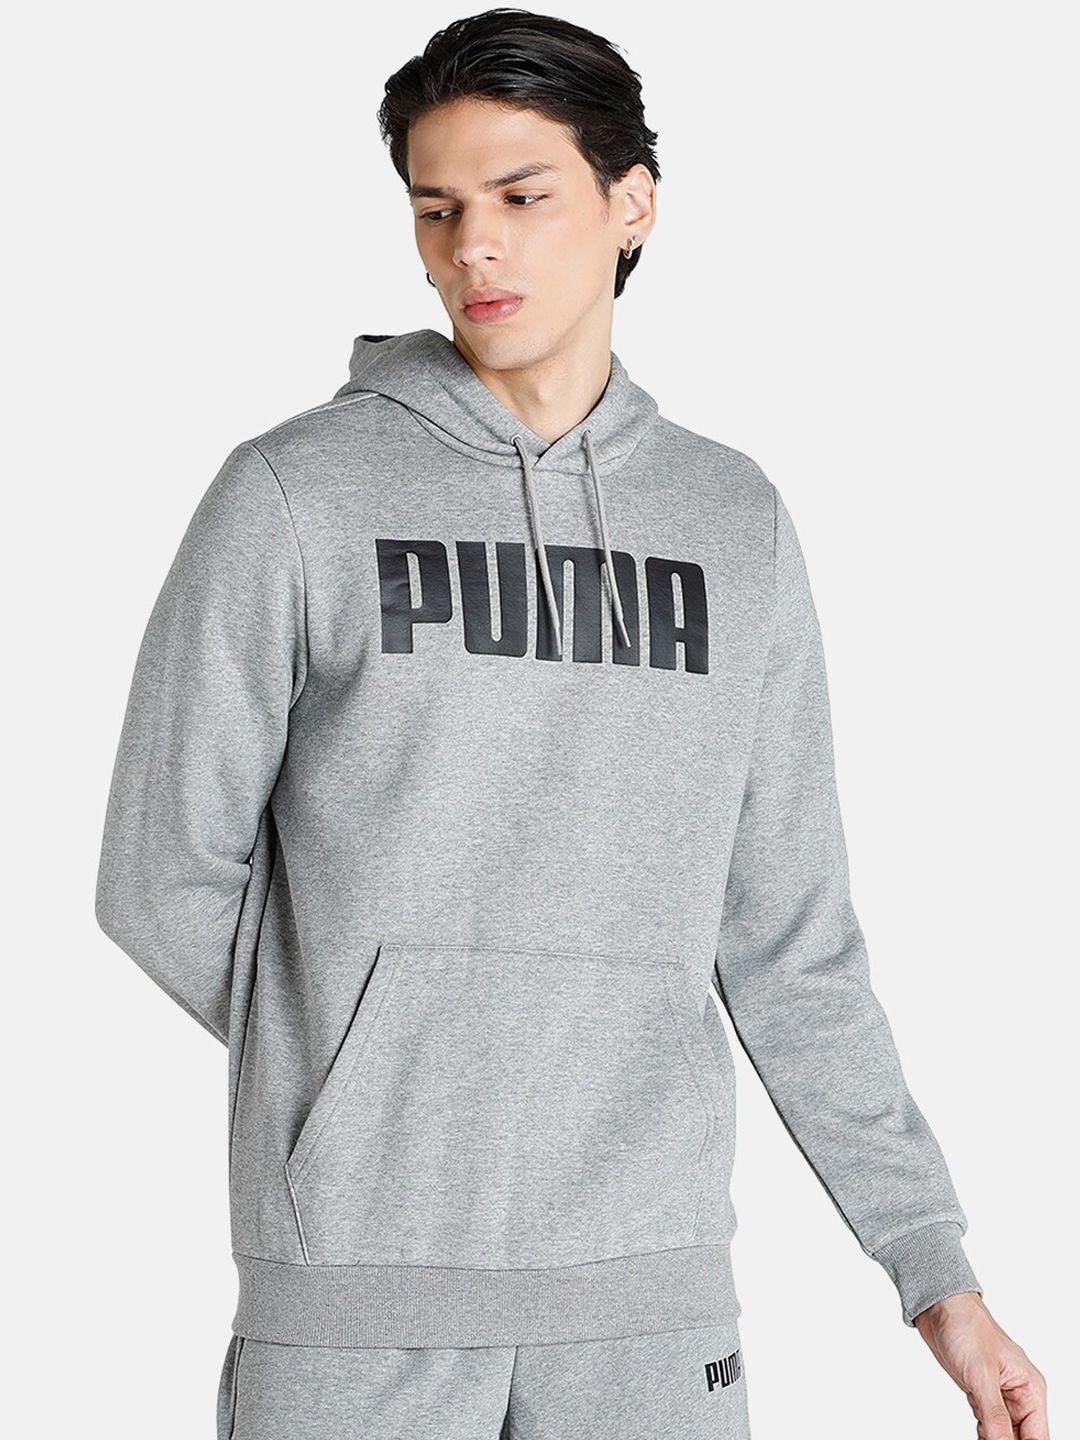 puma men grey printed hooded sweatshirt